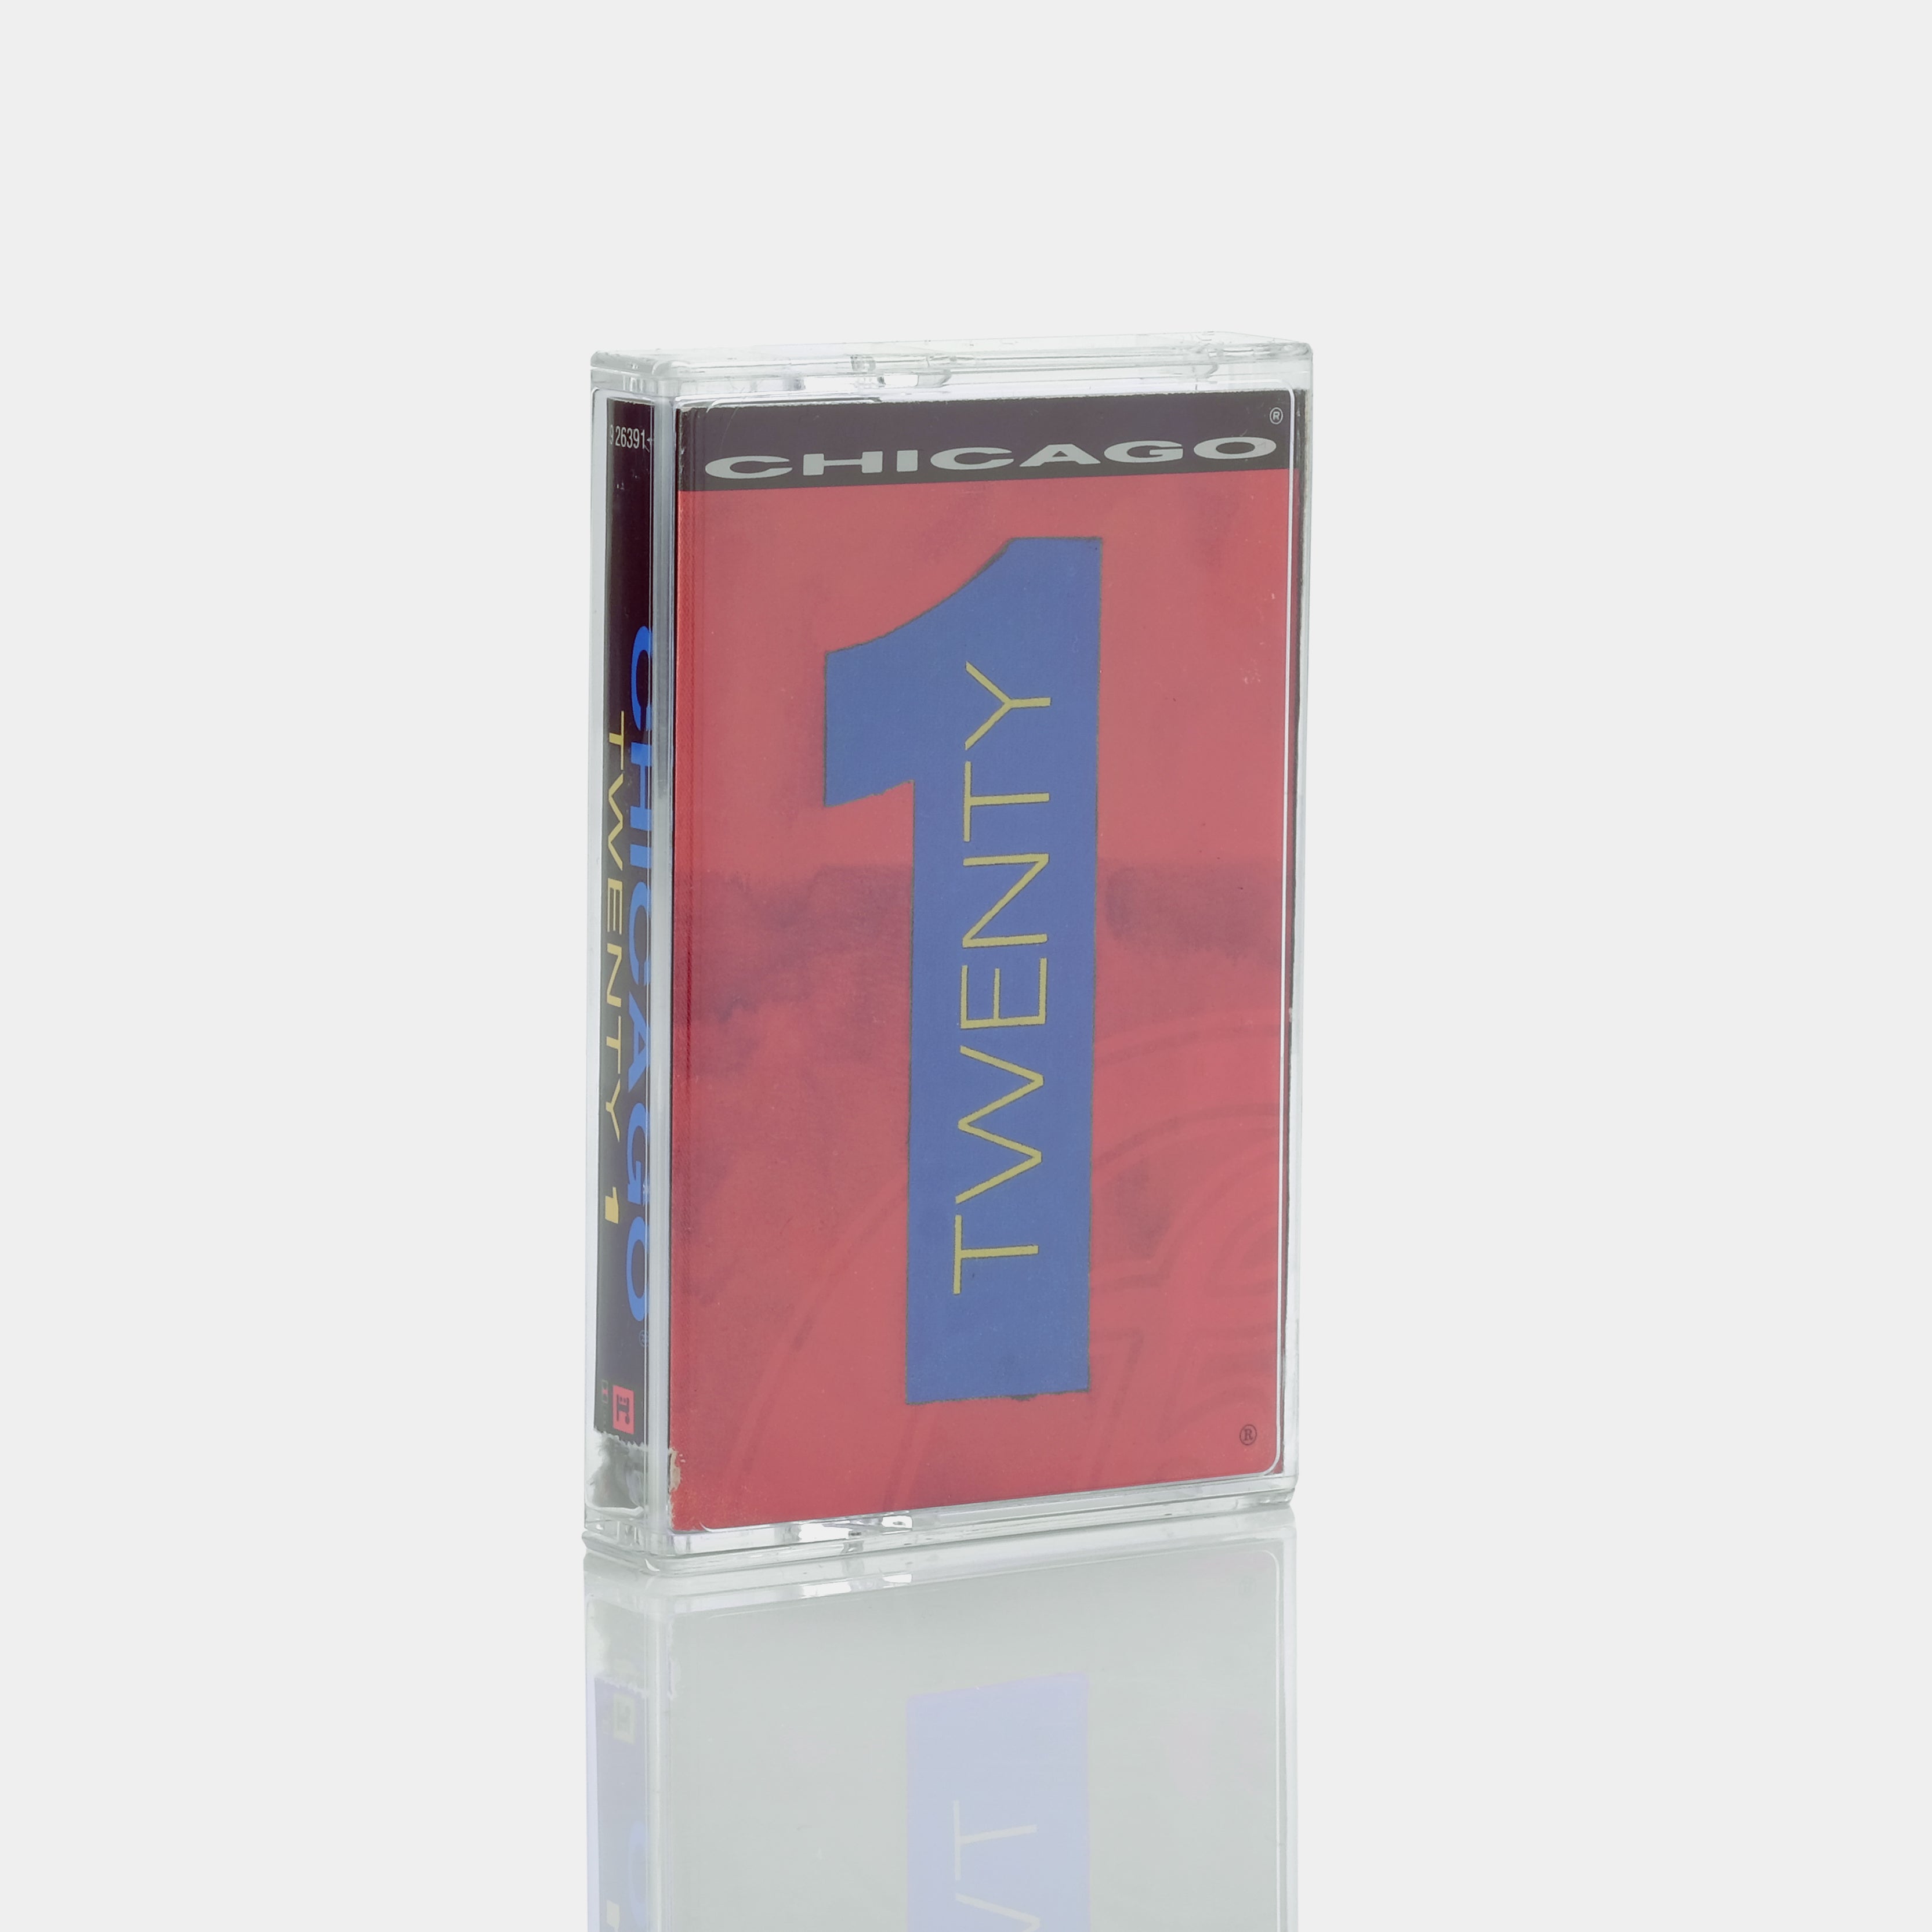 Chicago - Twenty 1 Cassette Tape